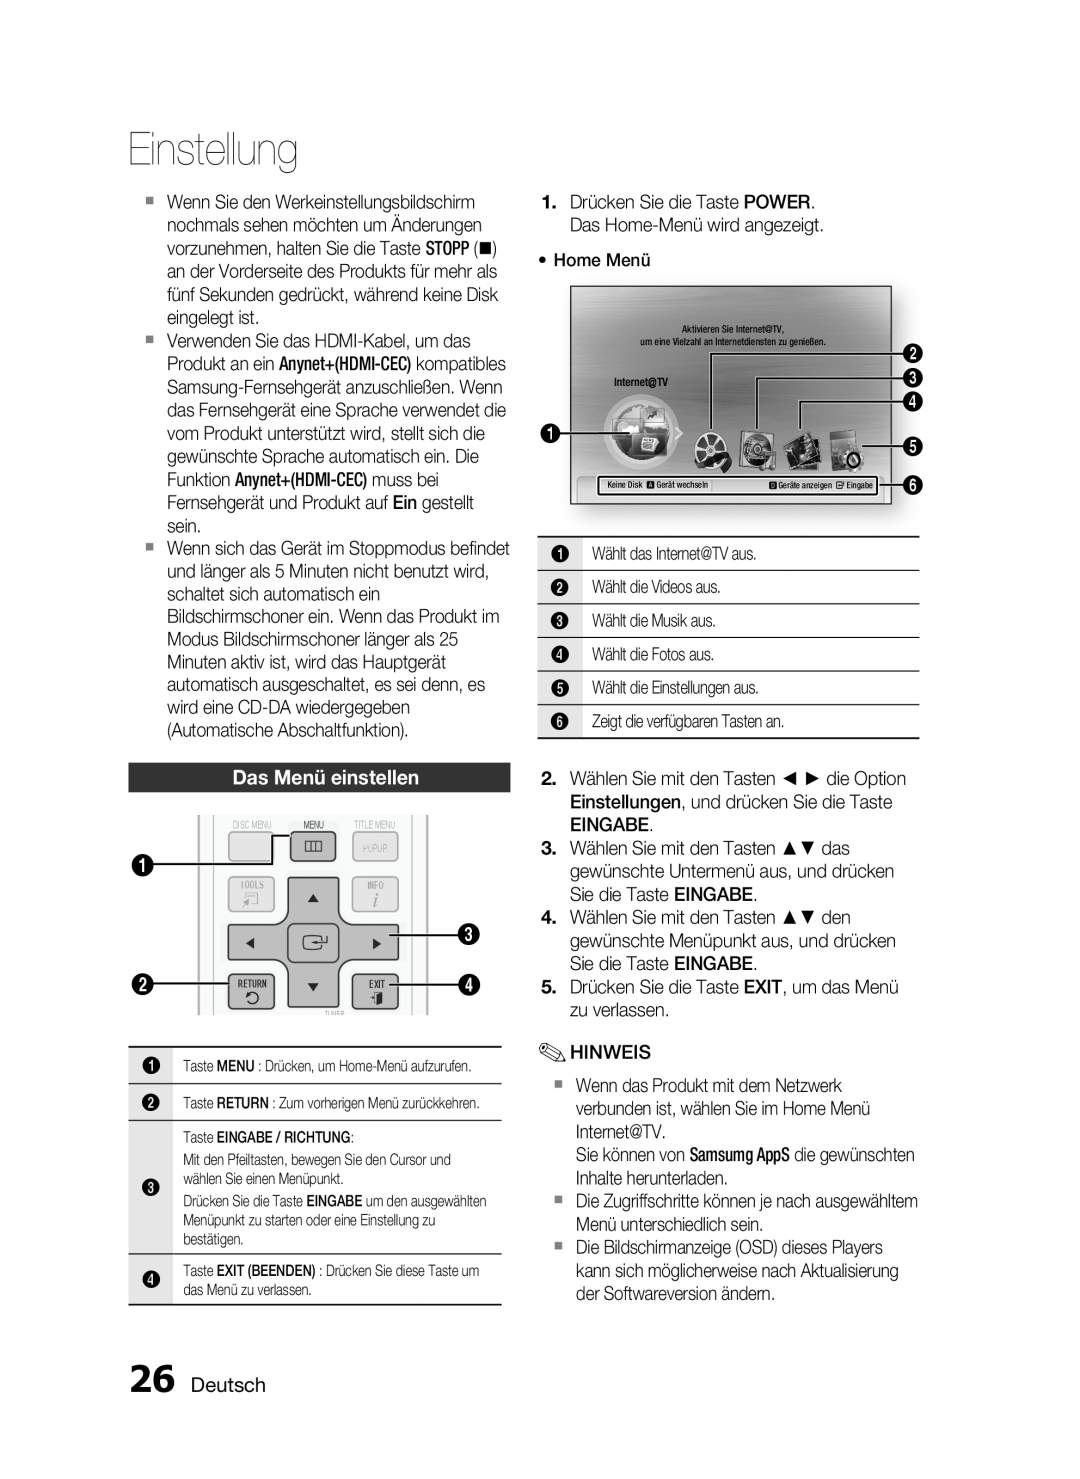 Samsung HT-C6200/XEF, HT-C6200/XEN, HT-C6200/EDC manual Das Menü einstellen, Deutsch, Einstellung 